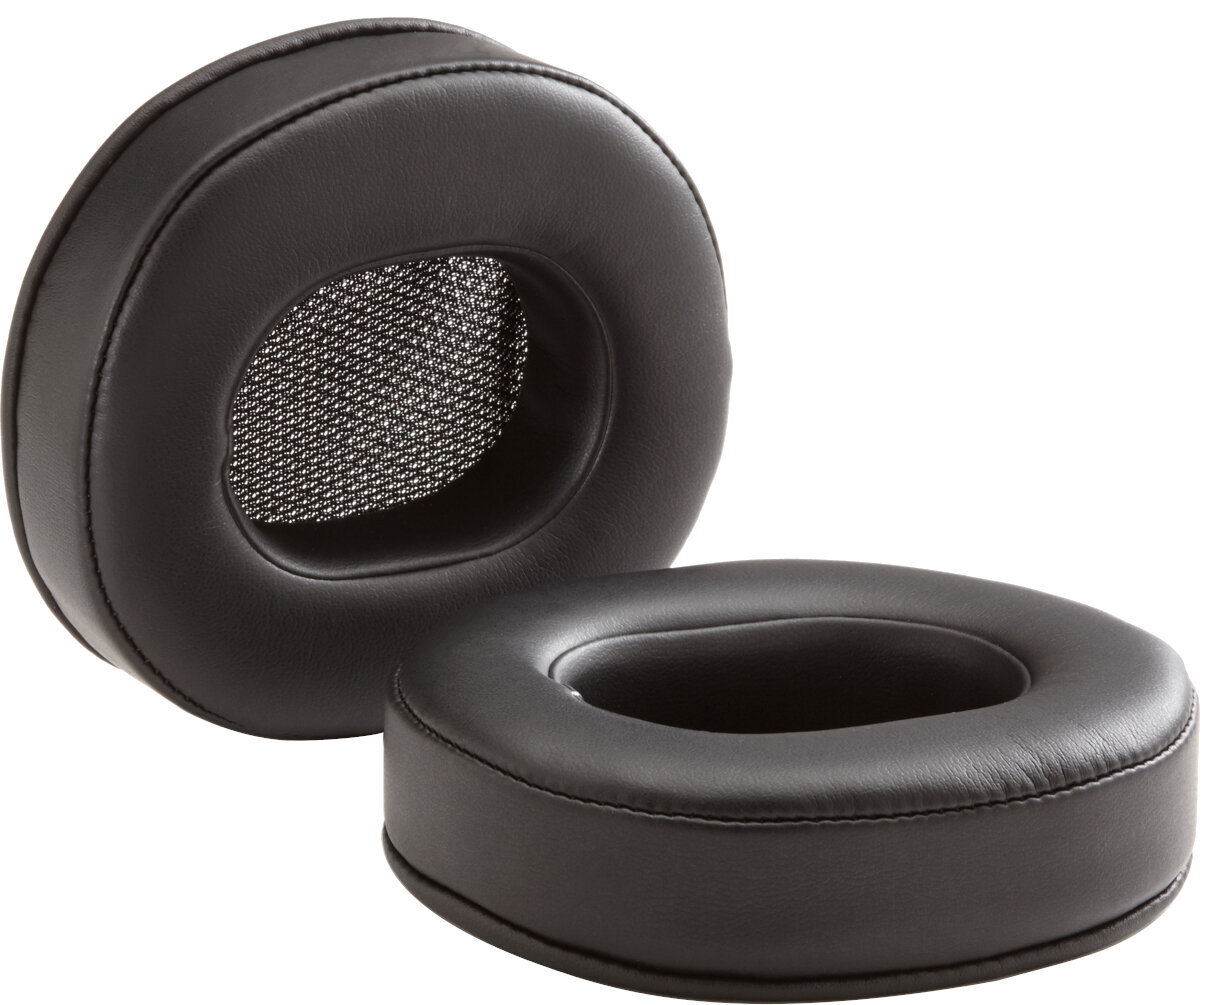 Μαξιλαράκια Αυτιών για Ακουστικά Dekoni Audio EPZ-T50RP-PL Μαξιλαράκια Αυτιών για Ακουστικά  T50RP Series Μαύρο χρώμα